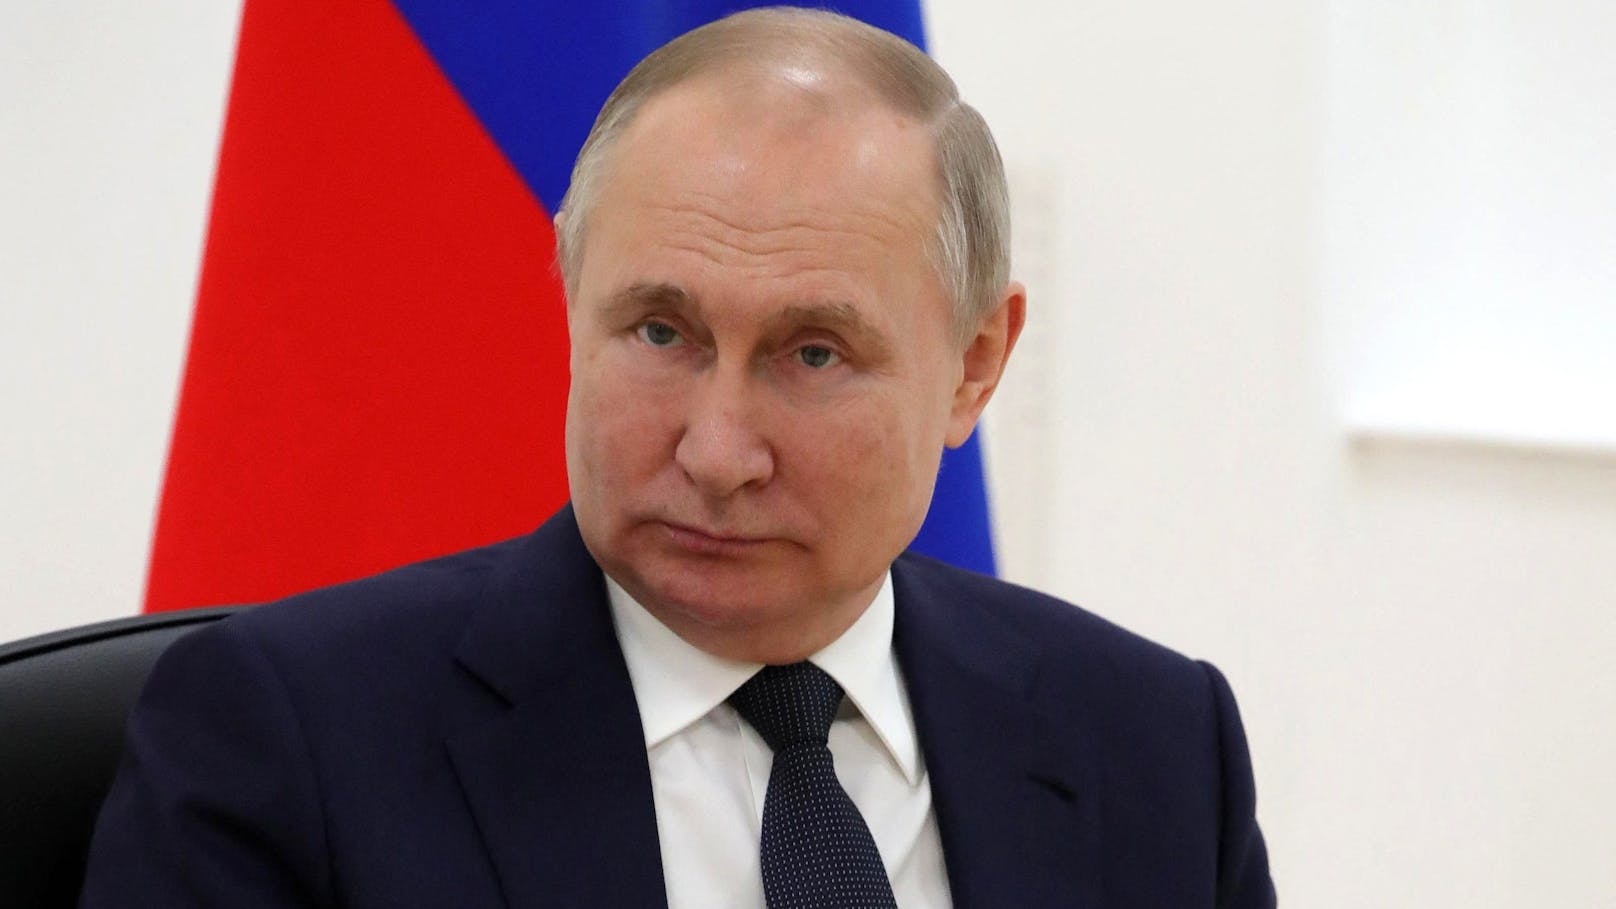 Kreml-Chef Wladimir Putin: "Kein Zweifel an Erfolg"